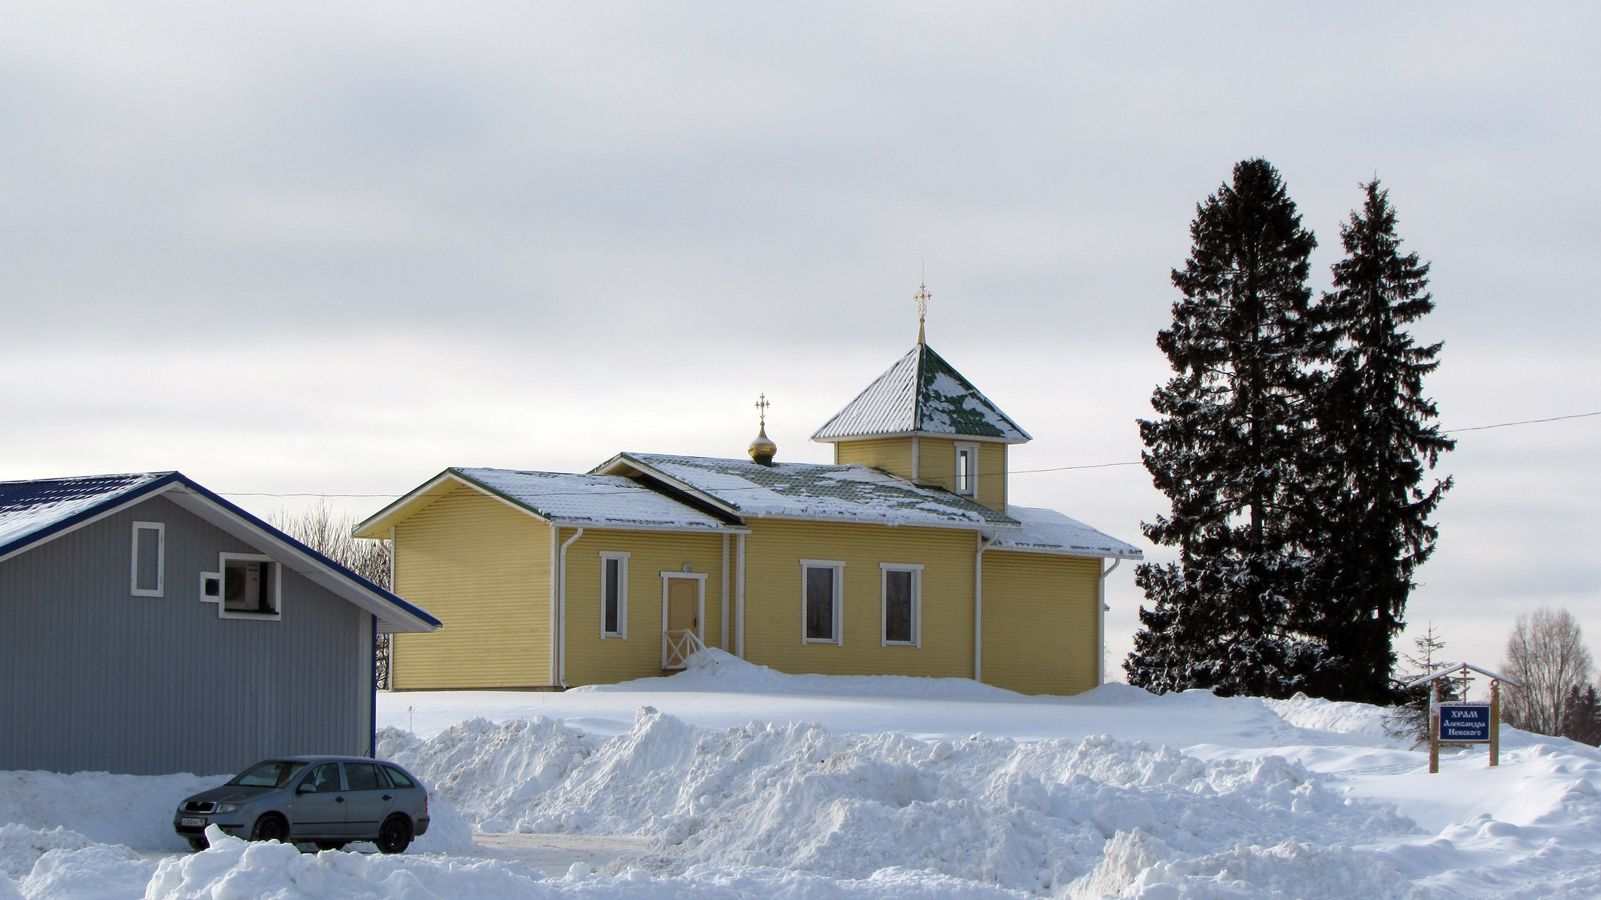 February 2015. Orthodox church